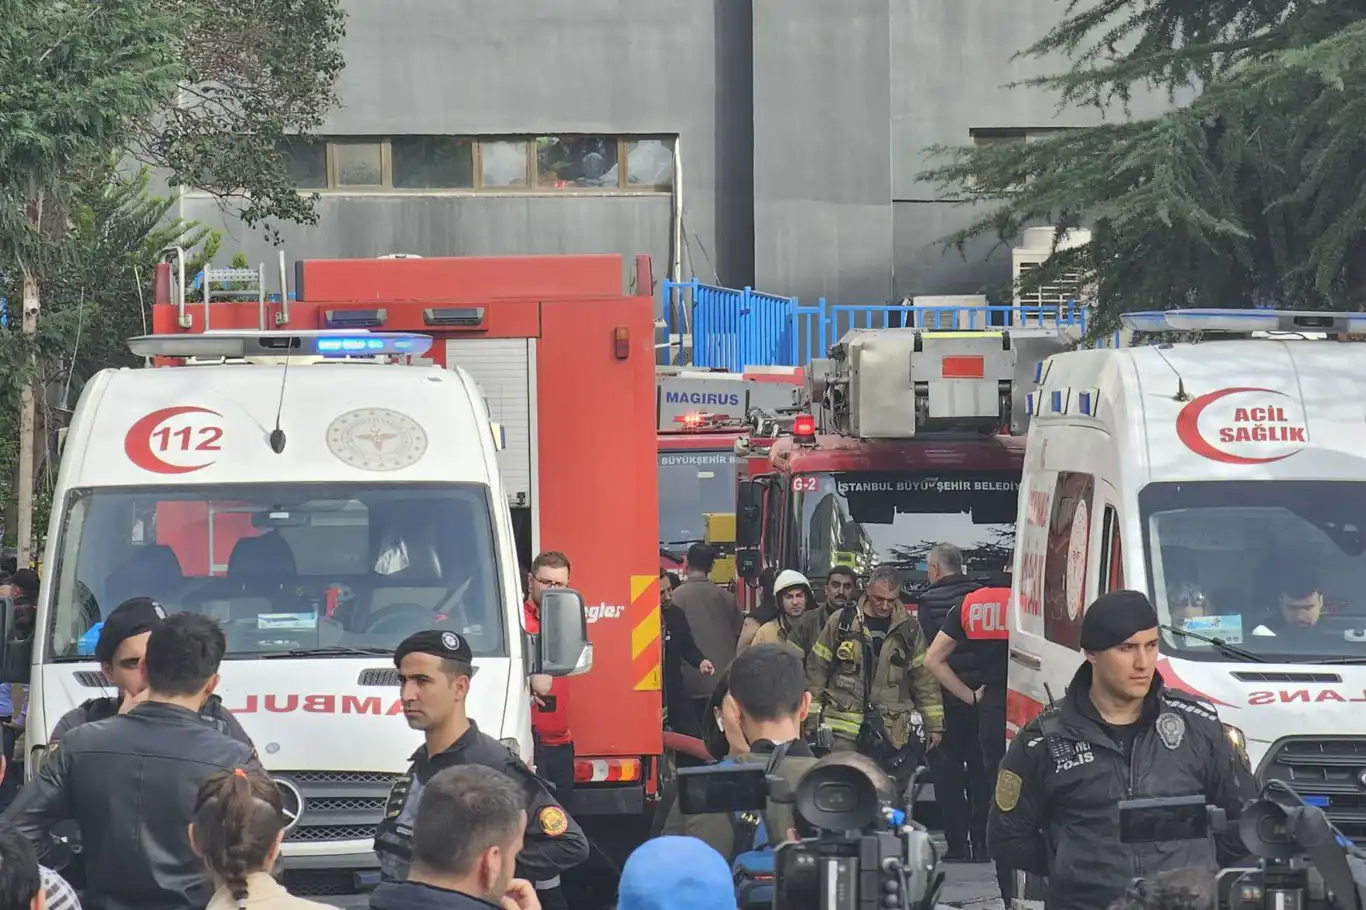 Beşiktaş’ta 29 Kişinin Öldüğü Yangına İlişkin 8 Kişi Gözaltına Alındı